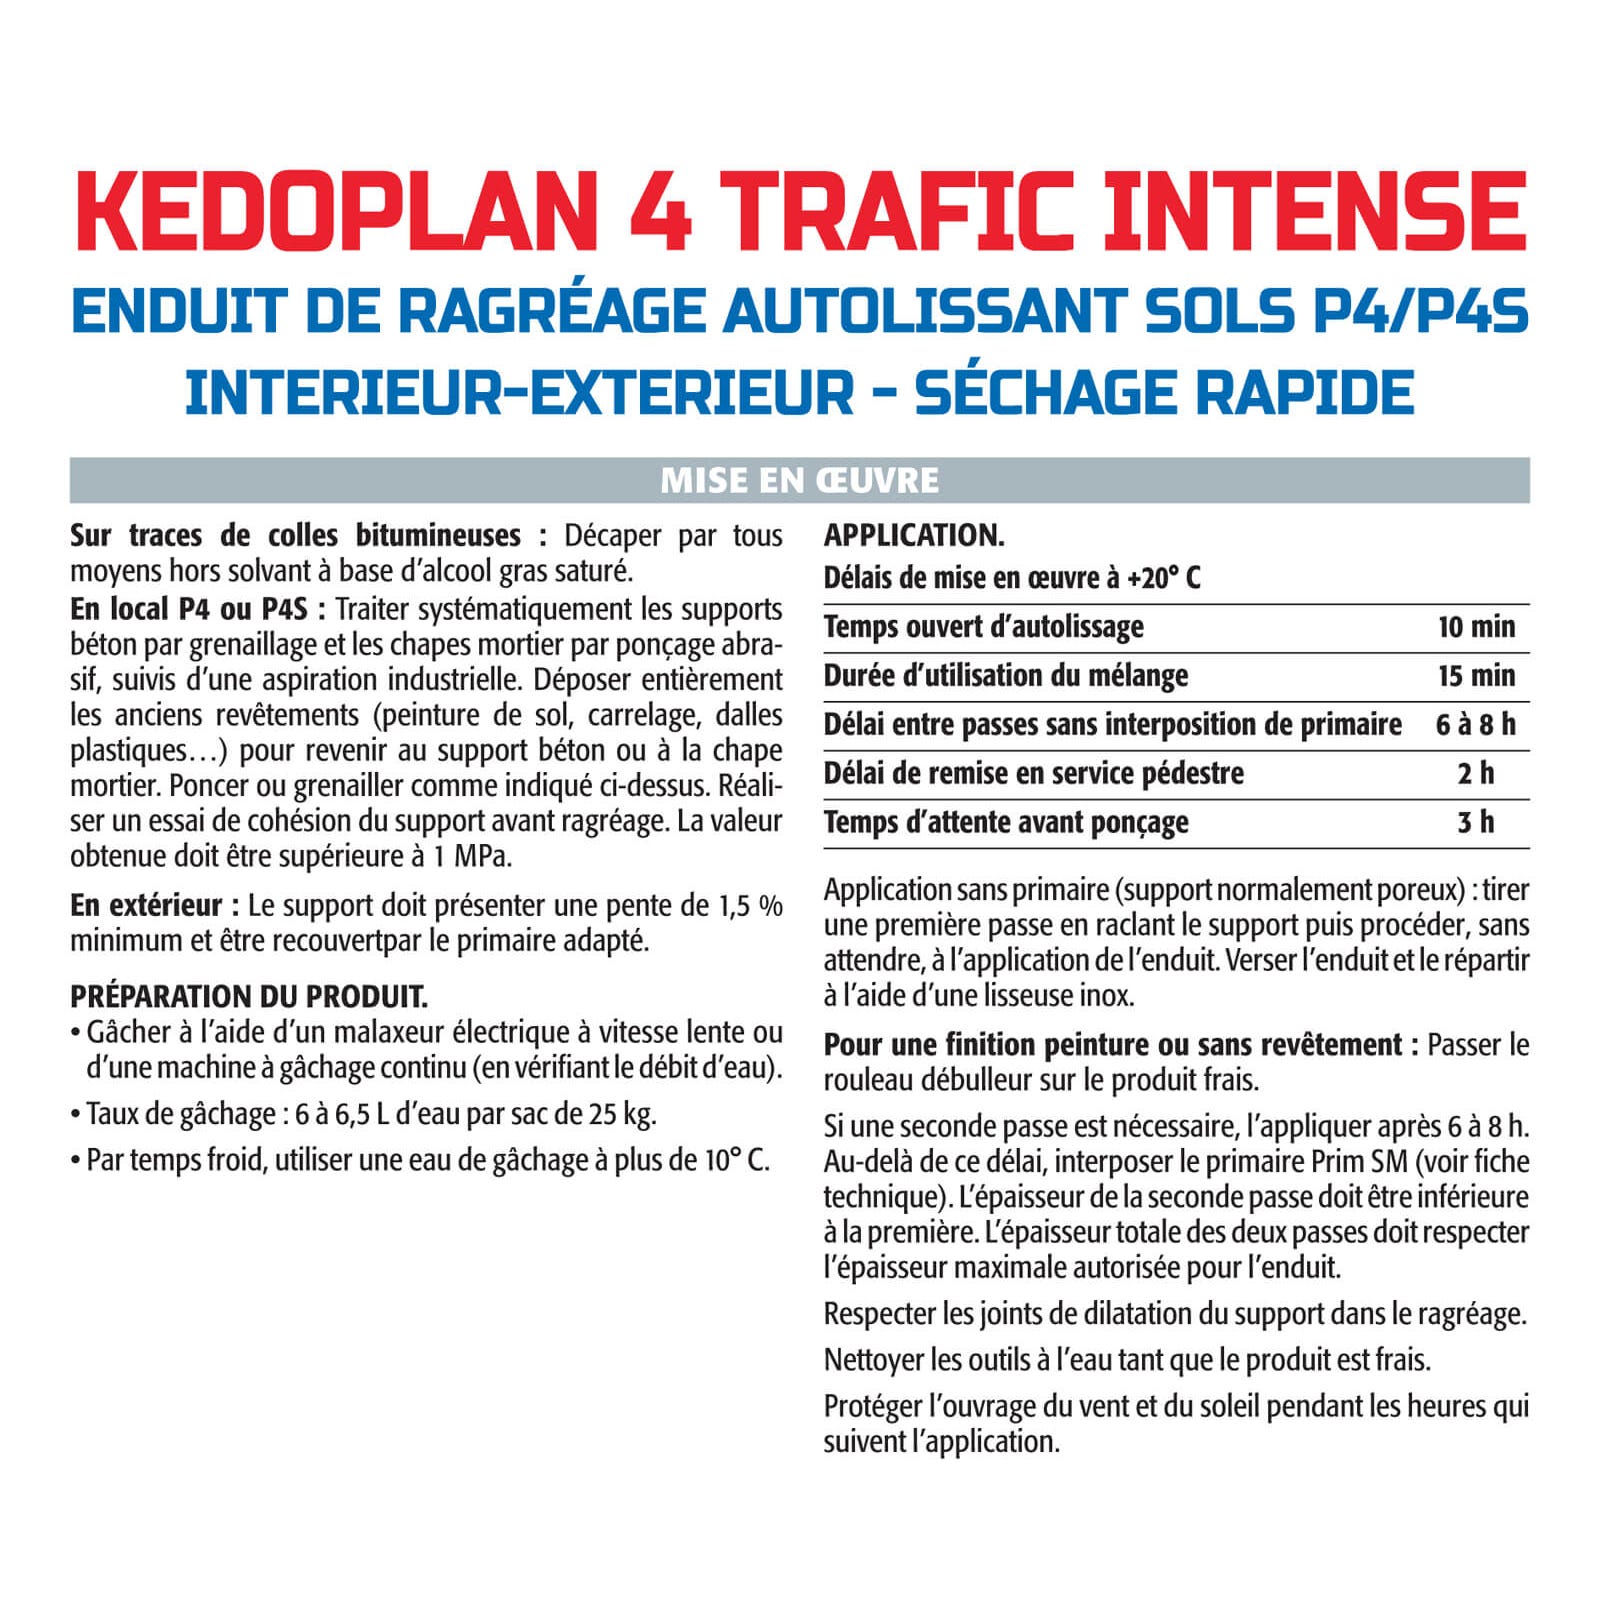 Semin - Enduit de Ragréage autolissant - Kedoplan 4 Traffic Intense - Intérieur/Extérieur - Sac 25 kg (lot de 3) 4